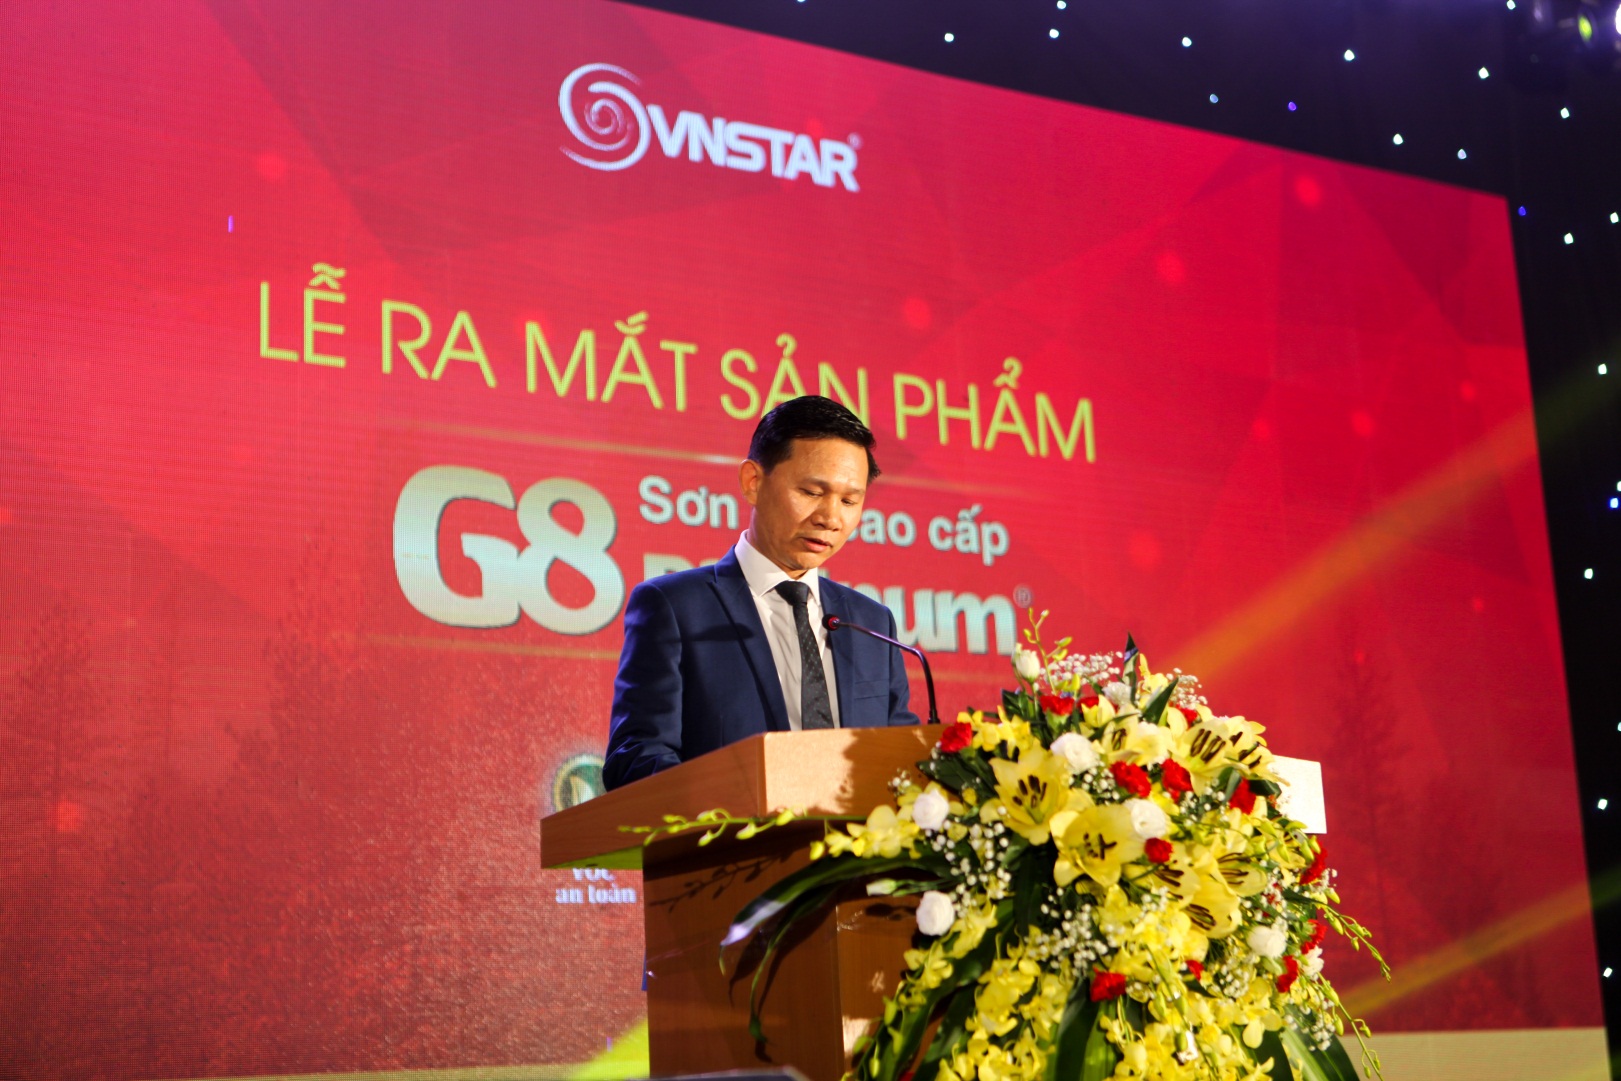 Sản phẩm sơn gỗ cao cấp G8 Platinum lần đầu tiên được giới thiệu tại các làng nghề huyện Đan Phượng, TP. Hà Nội